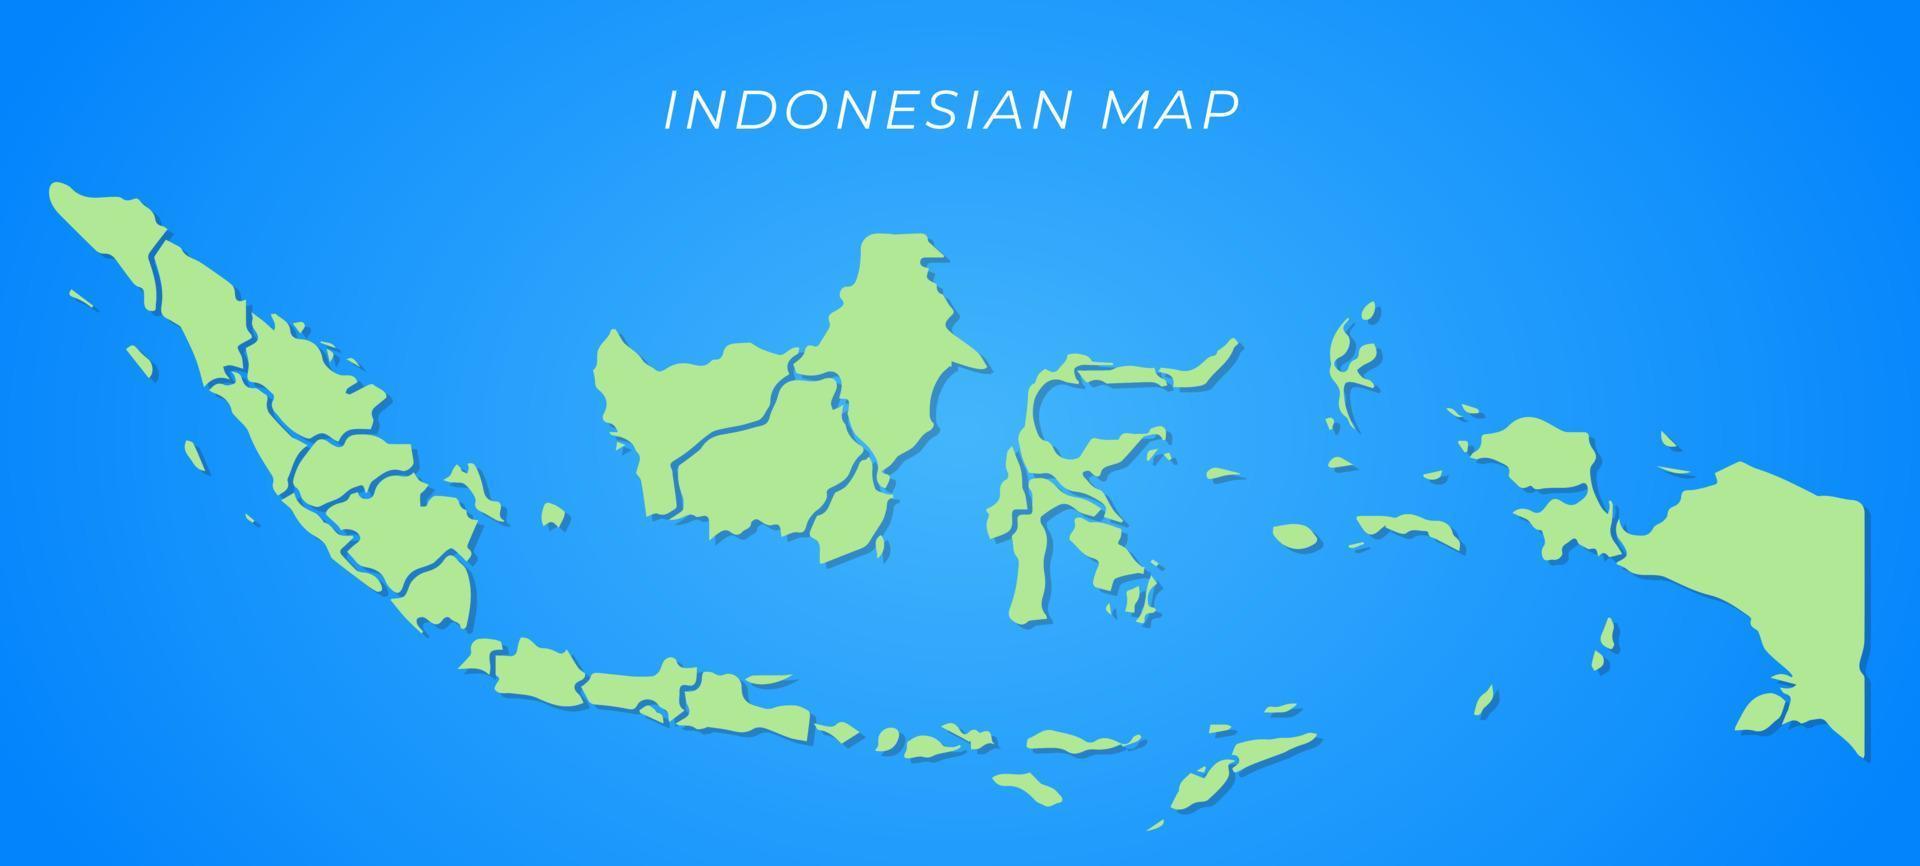 Indonesien-Kartenvektor mit grüner Karte und blauem Hintergrund vektor